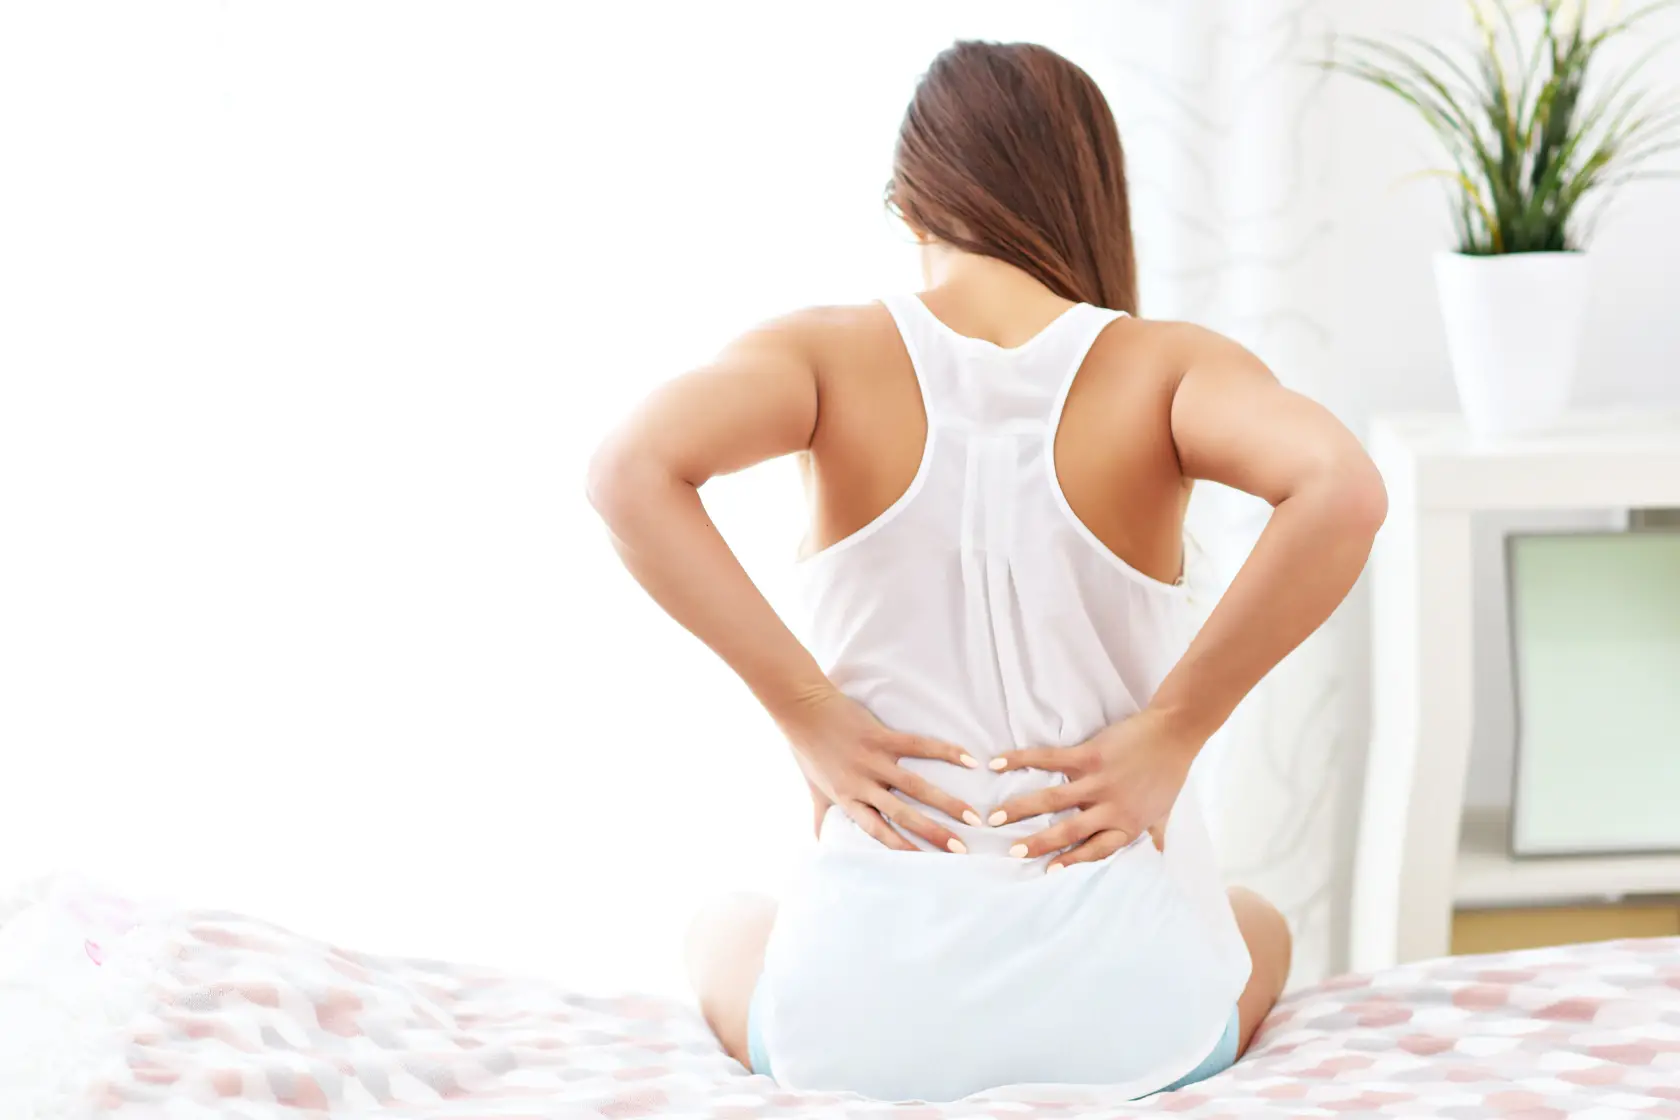 Does Backache Constipation Cause Pain? » MobileHealthData